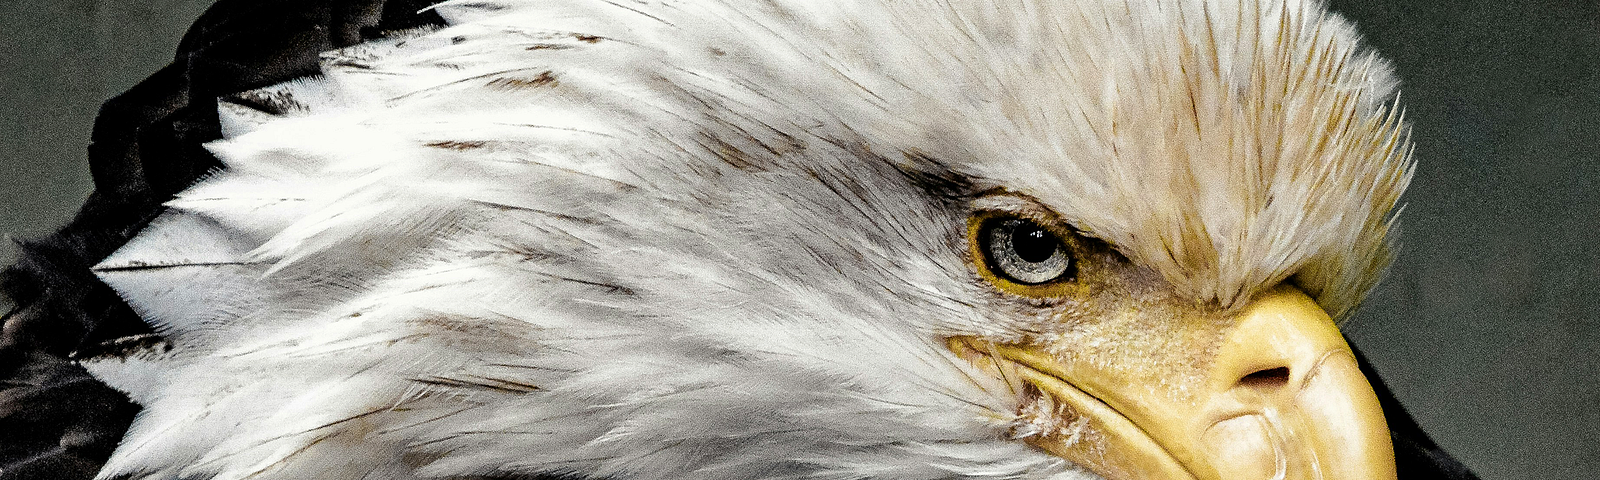 Close-up of bald eagle.